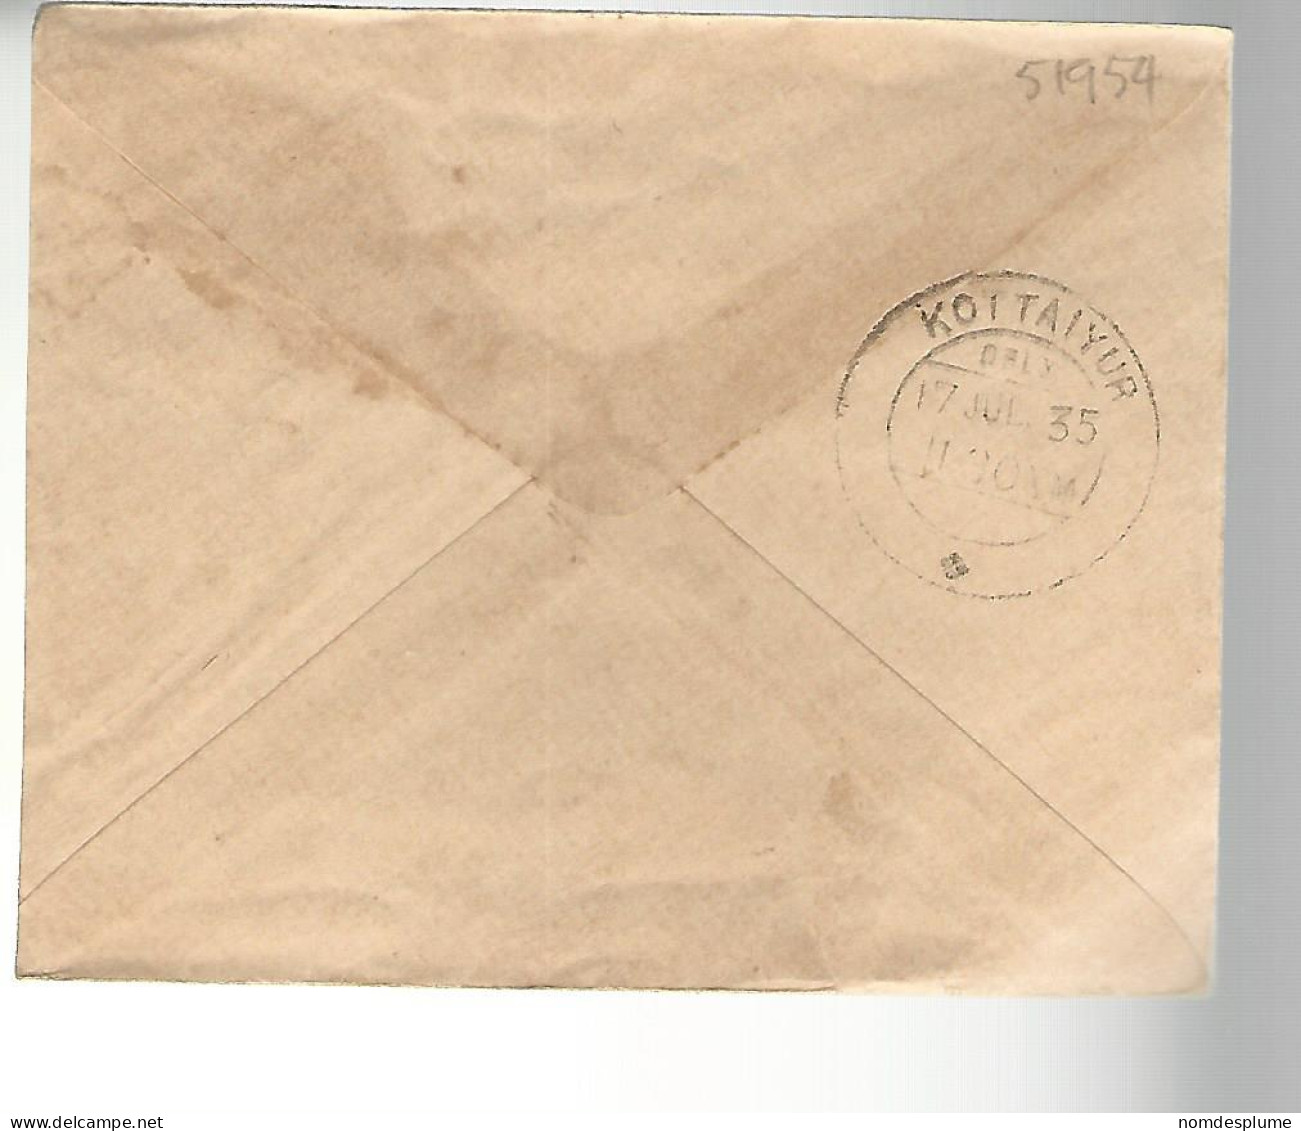 51954 ) Cover India Postmark Kottaiyur 1935 - Enveloppes